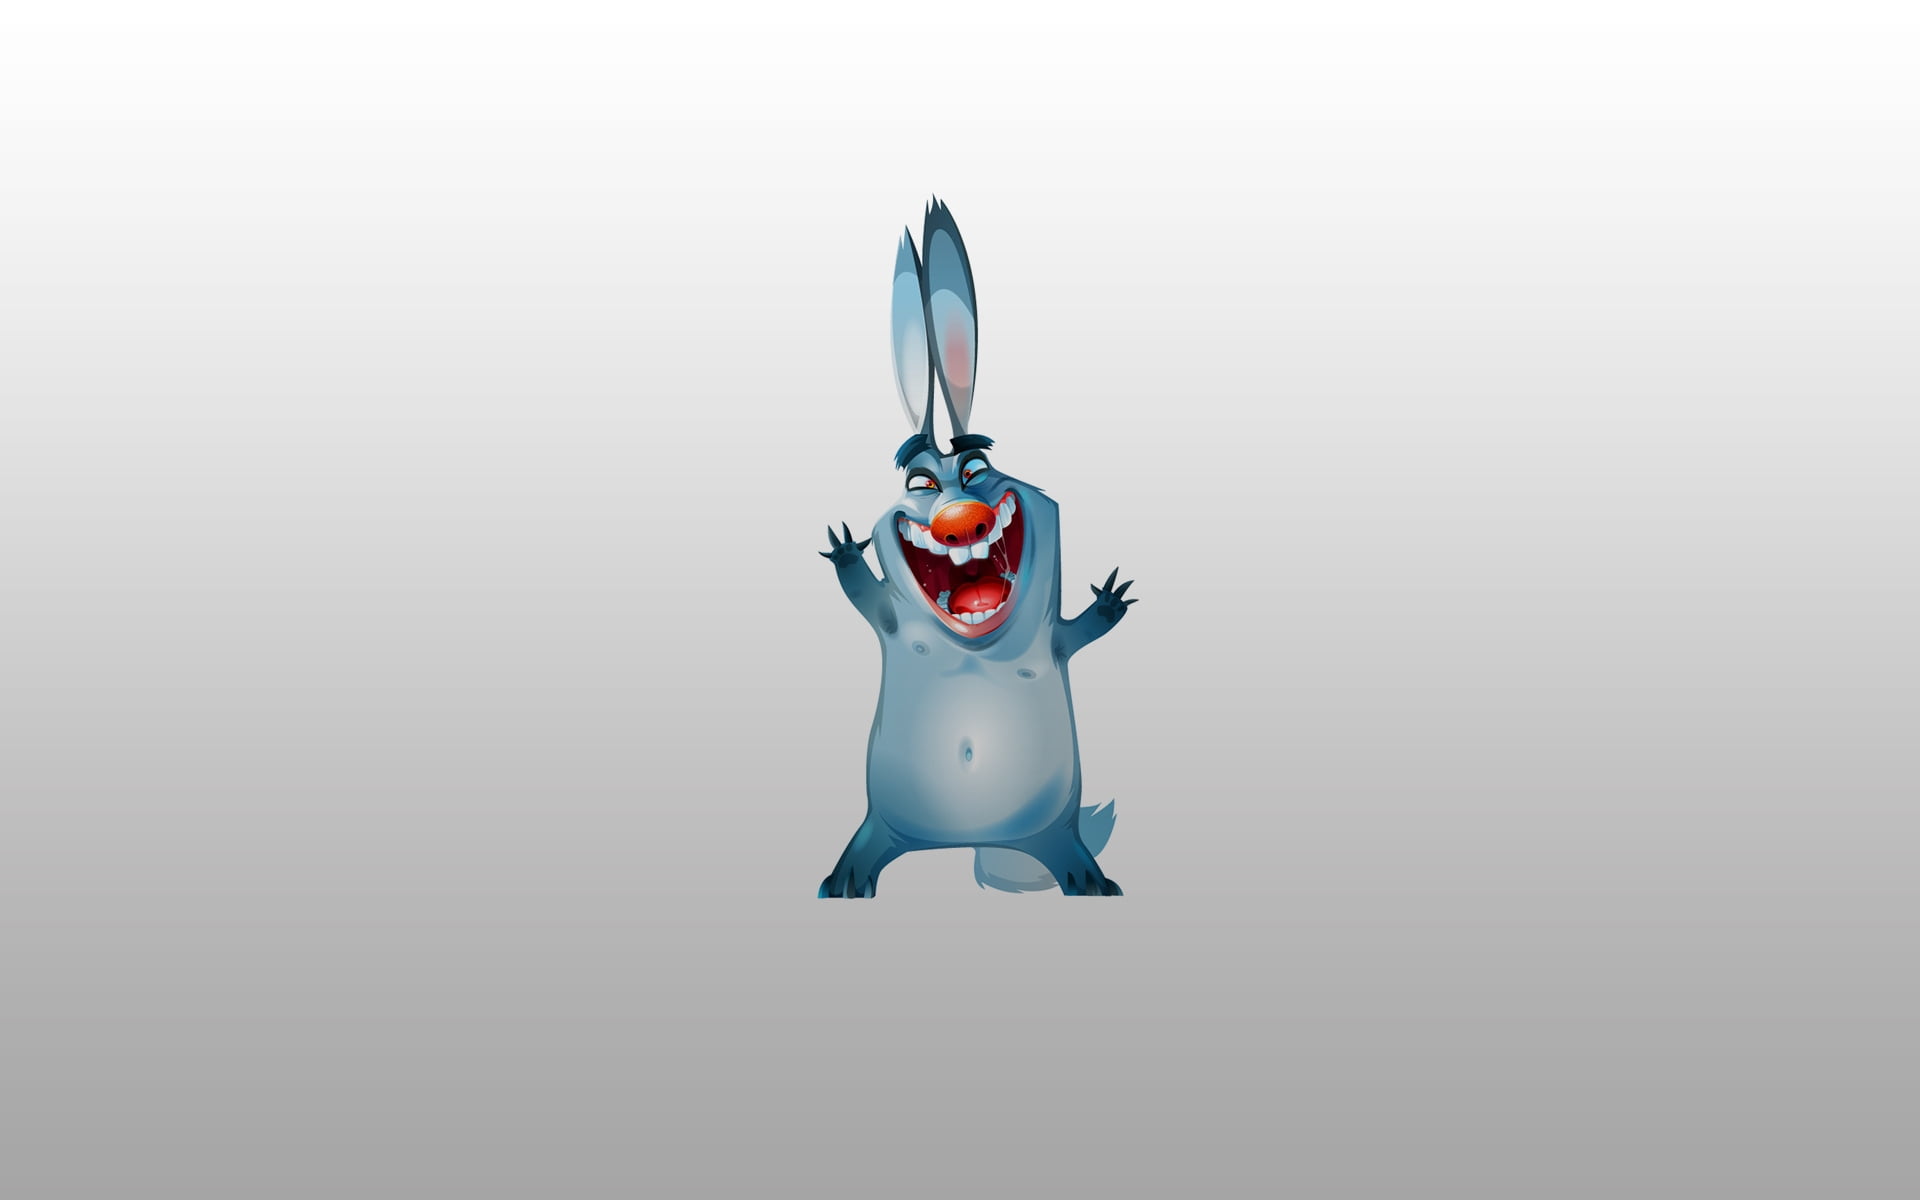 Hd Wallpaper Funny Bunny 1080p